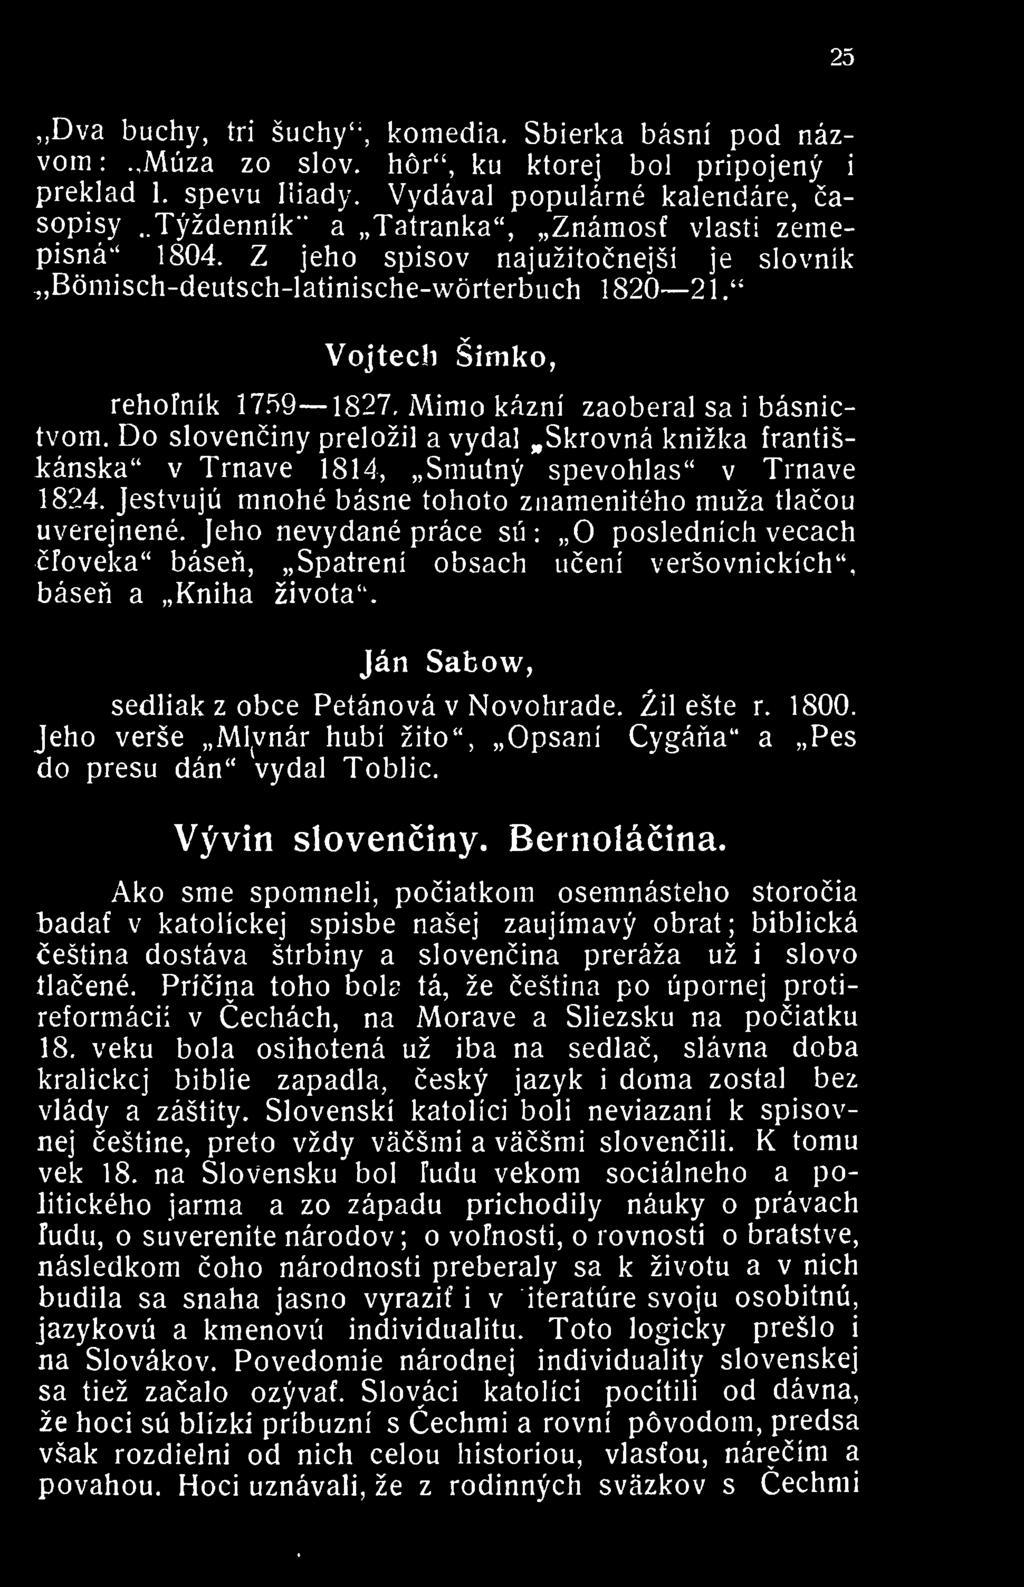 Mimo kazni zaoberal sa i basnictvom. Do slovenciny prelozil a vydal.skrovna knizka frantisi:anska" v Trnave 1814, Smutny spevohlas" v Trnave 1824.